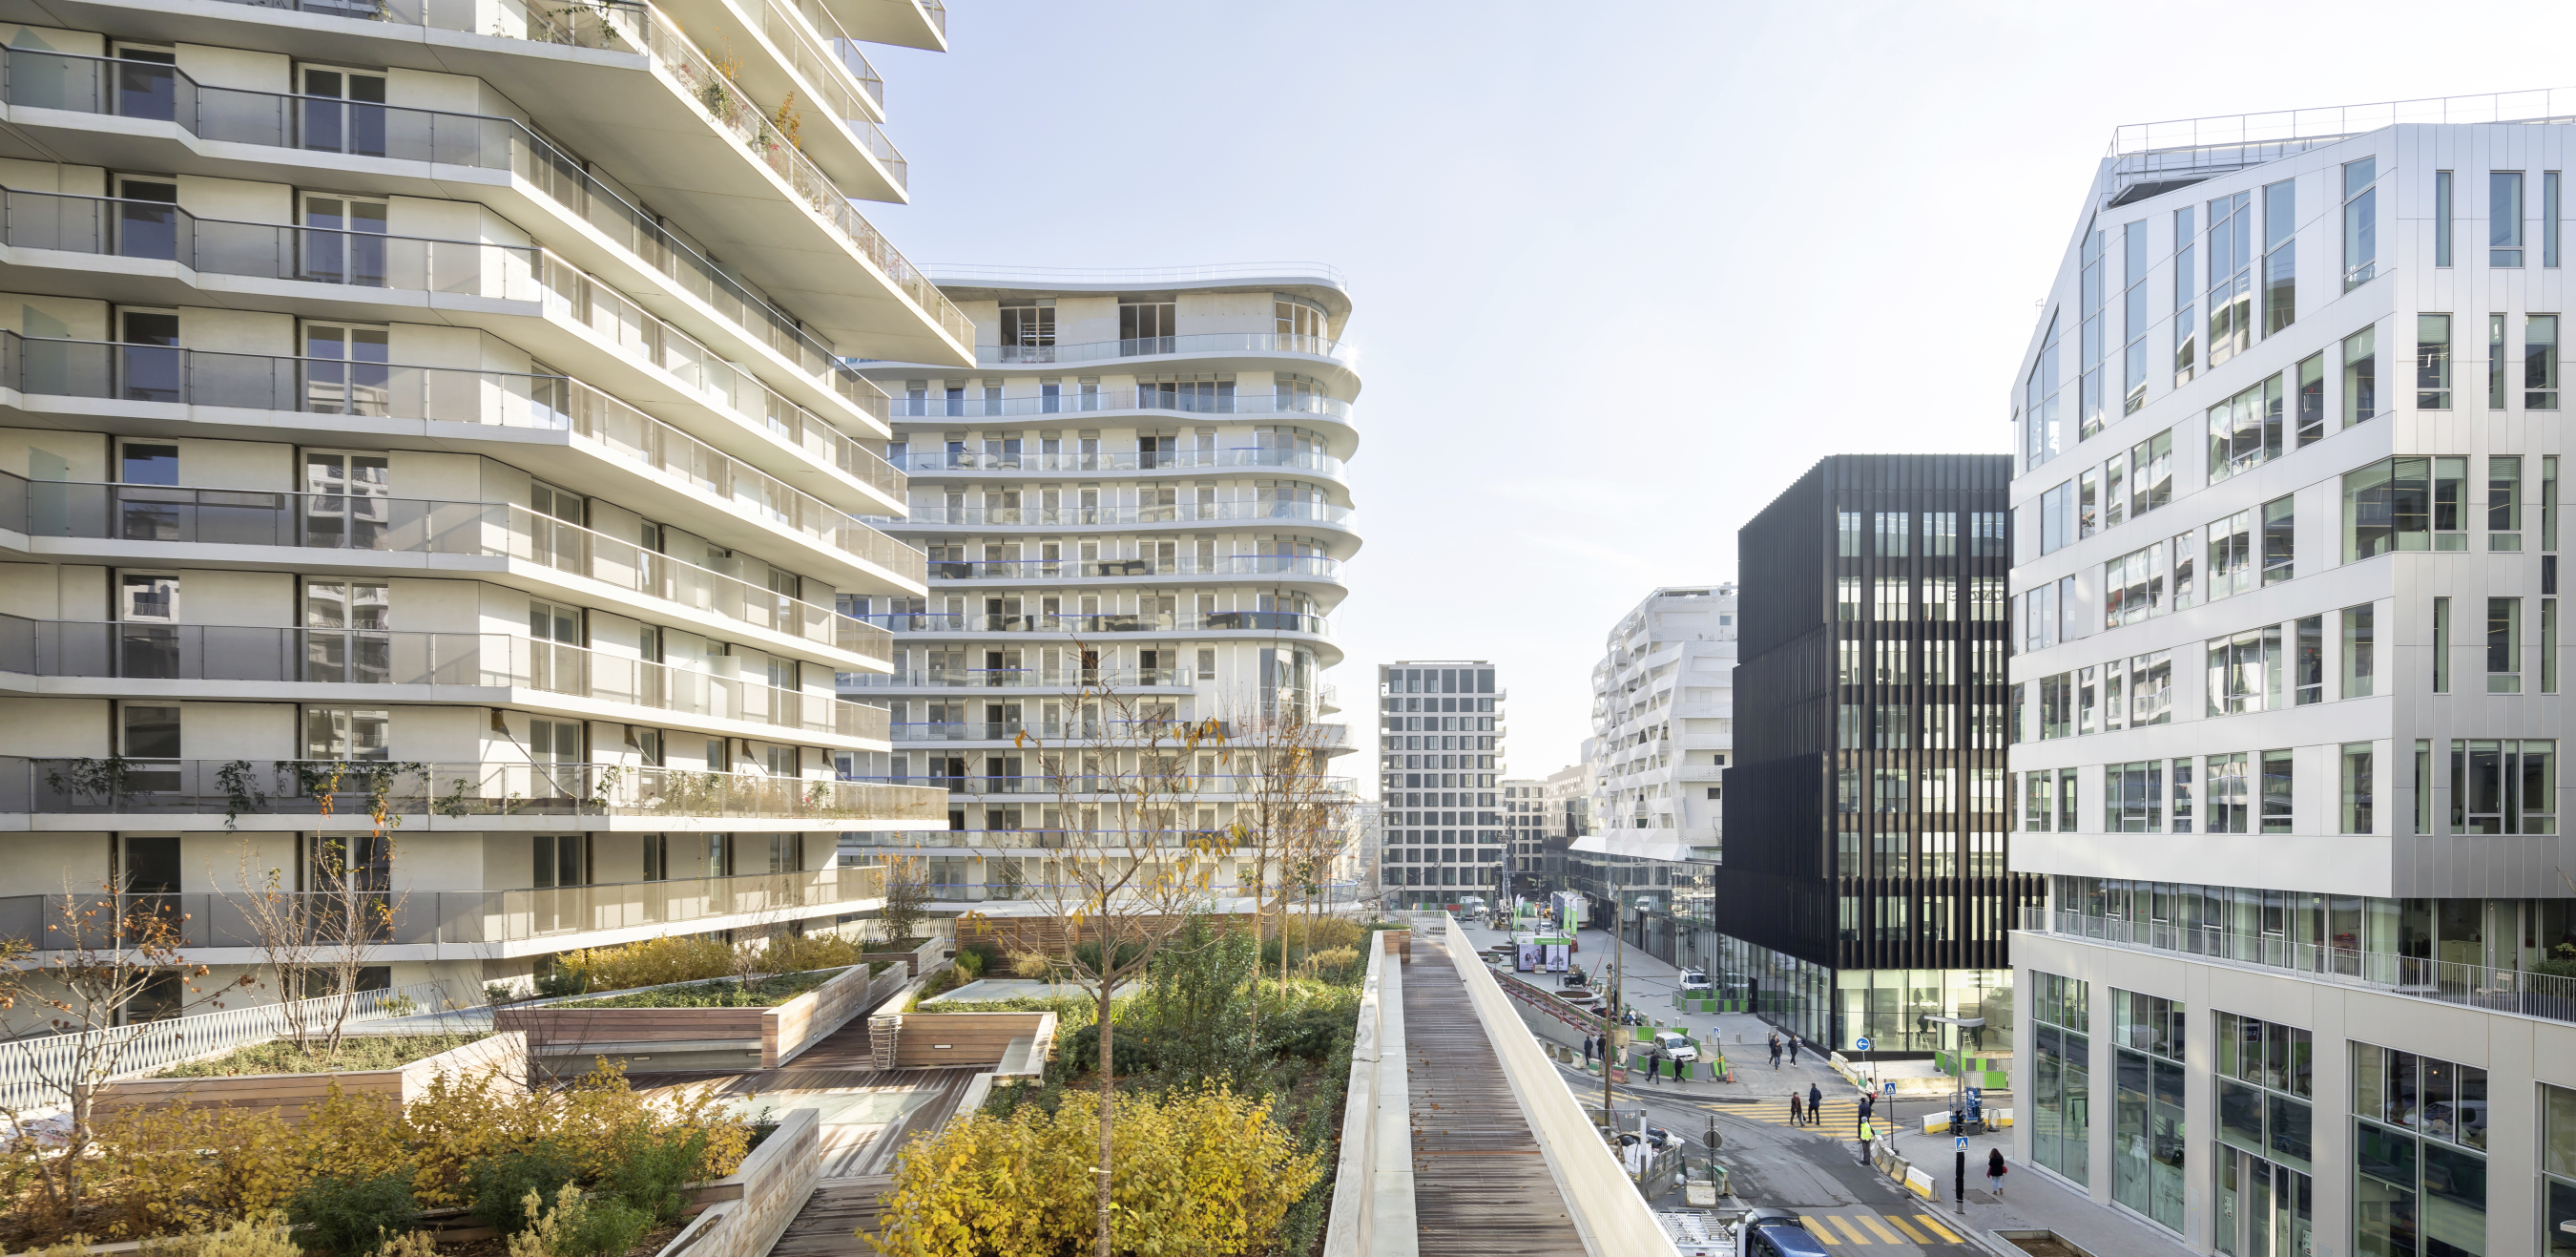 Au sein du quartier Clichy-Batignolles à Paris, actuellement en cours de construction, 16 000 m² de végétalisation seront à terme installés sur différentes toitures-terrasses dans un objectif de retour de la nature en ville, de biodiversité et de réduction des îlots de chaleur urbain. 